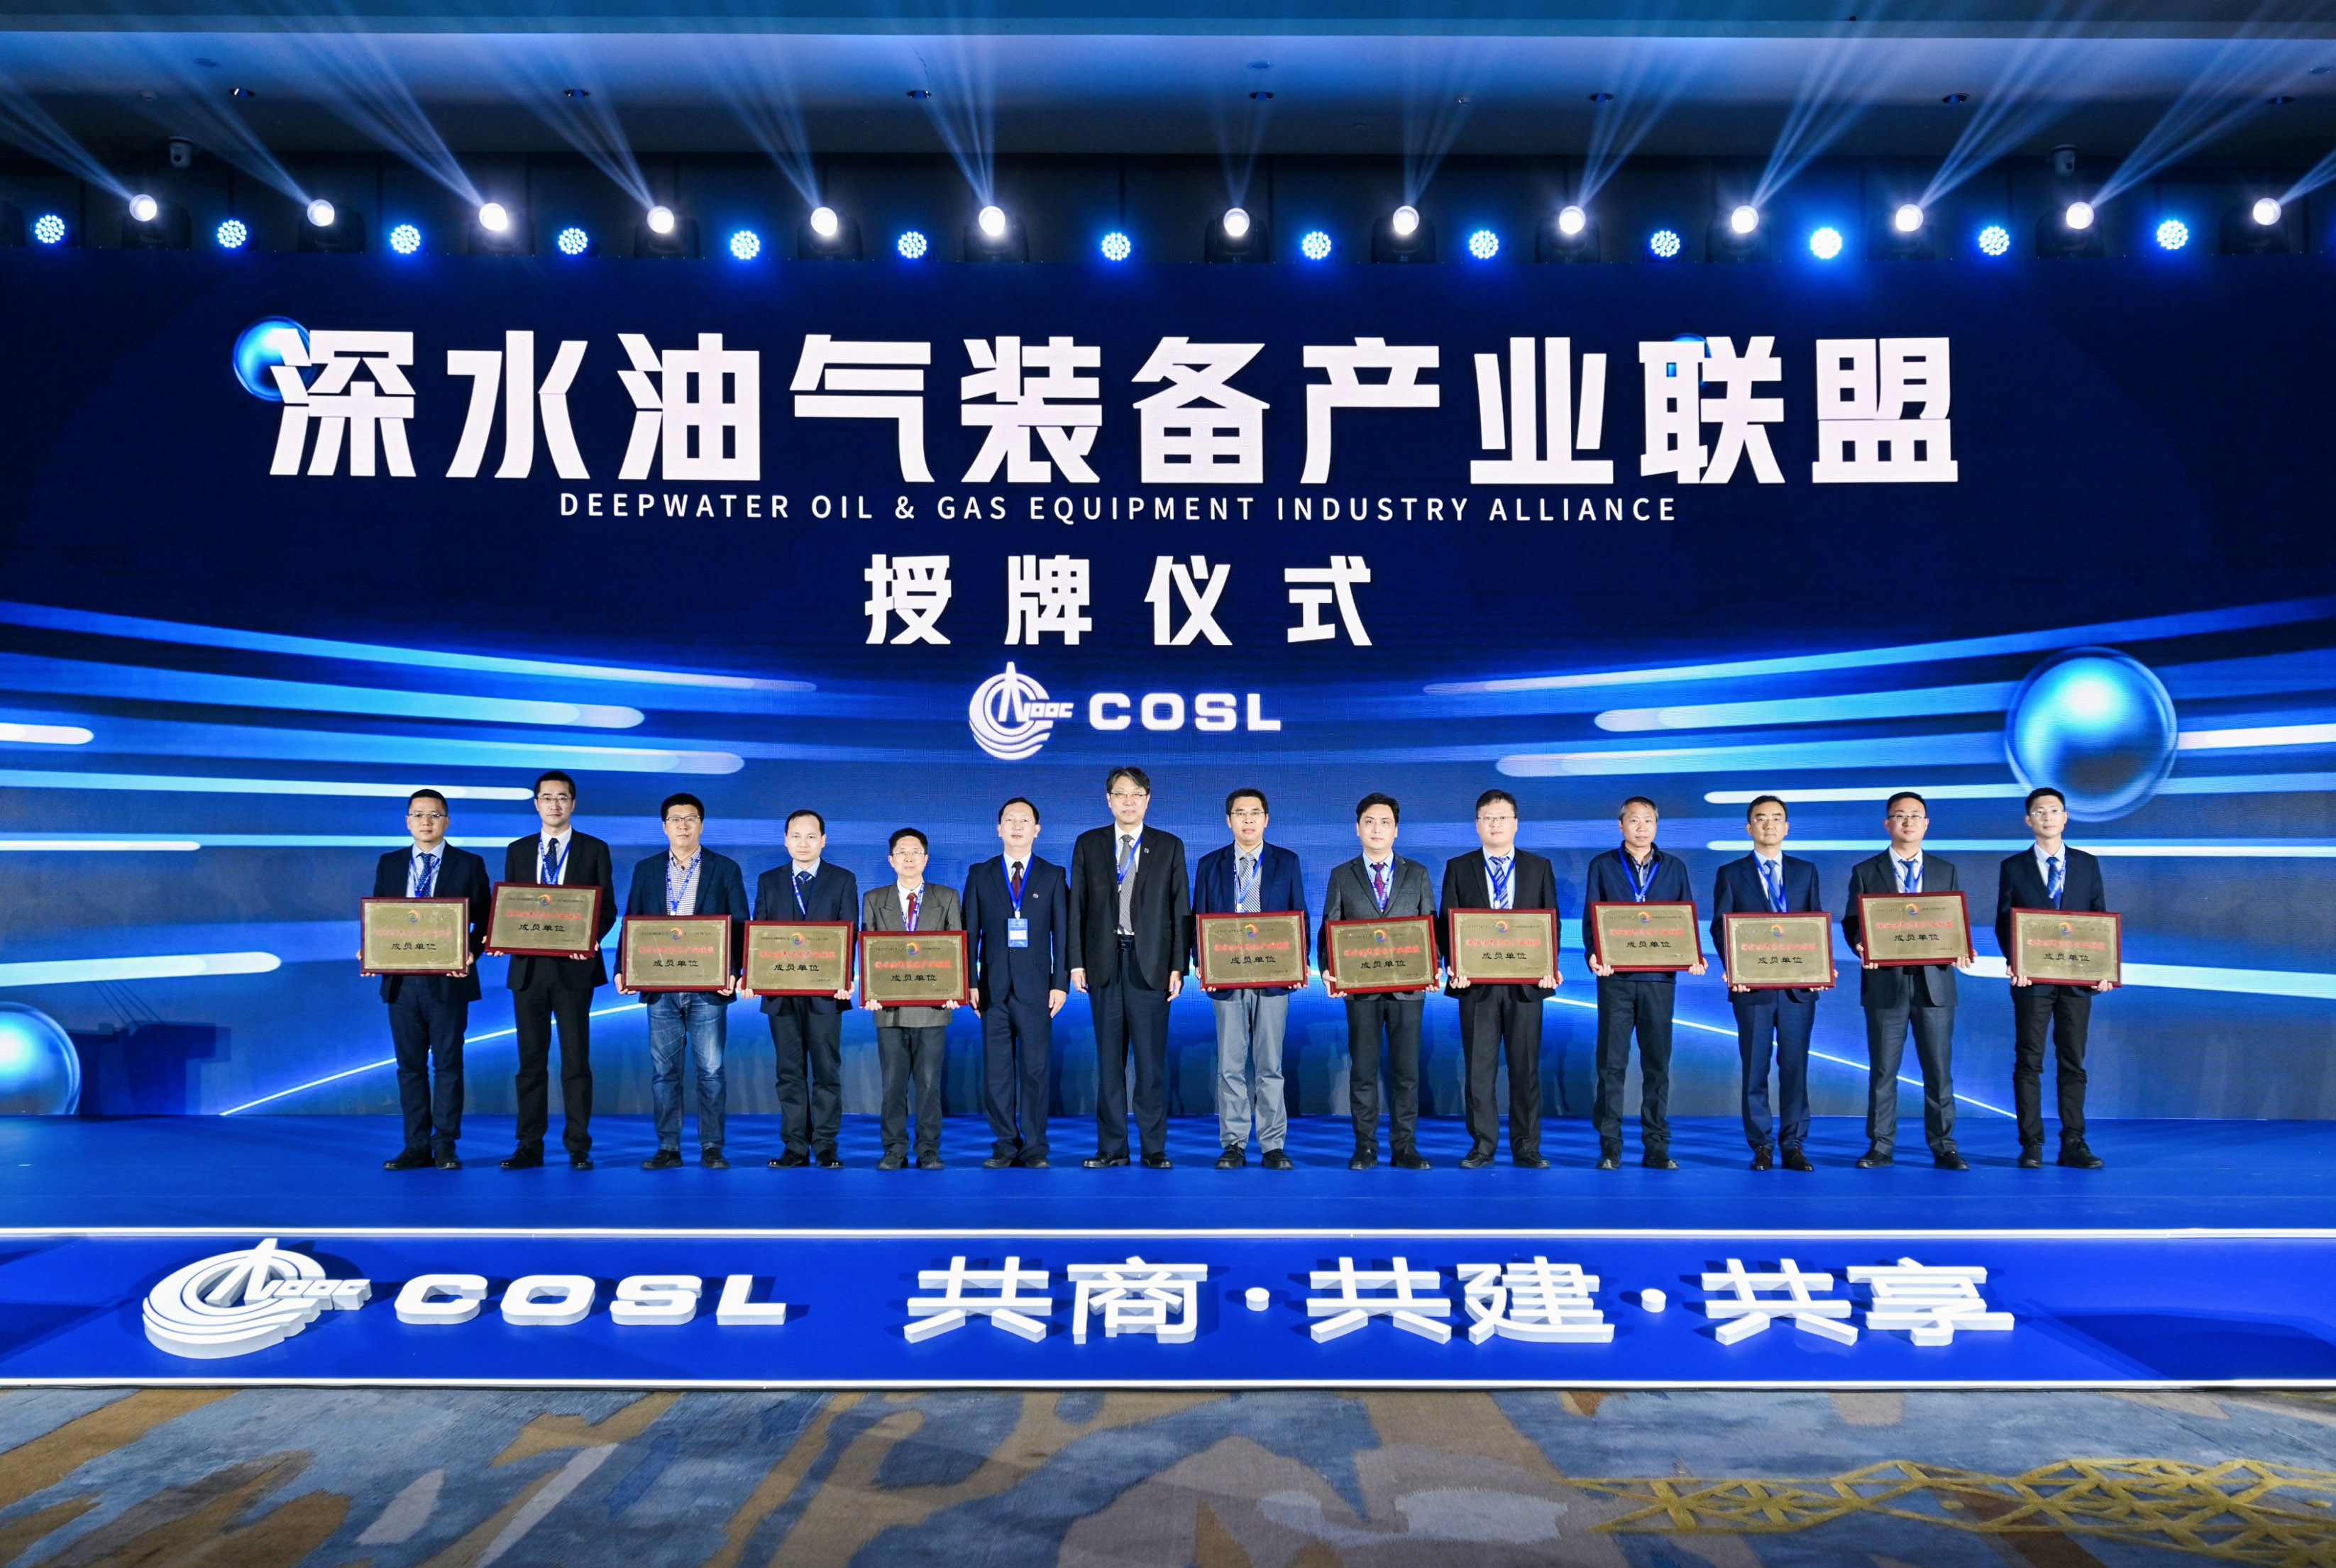 2 伟易博·(中国区)官方网站院成为深水油气装备产业联盟成员单位V2.jpg